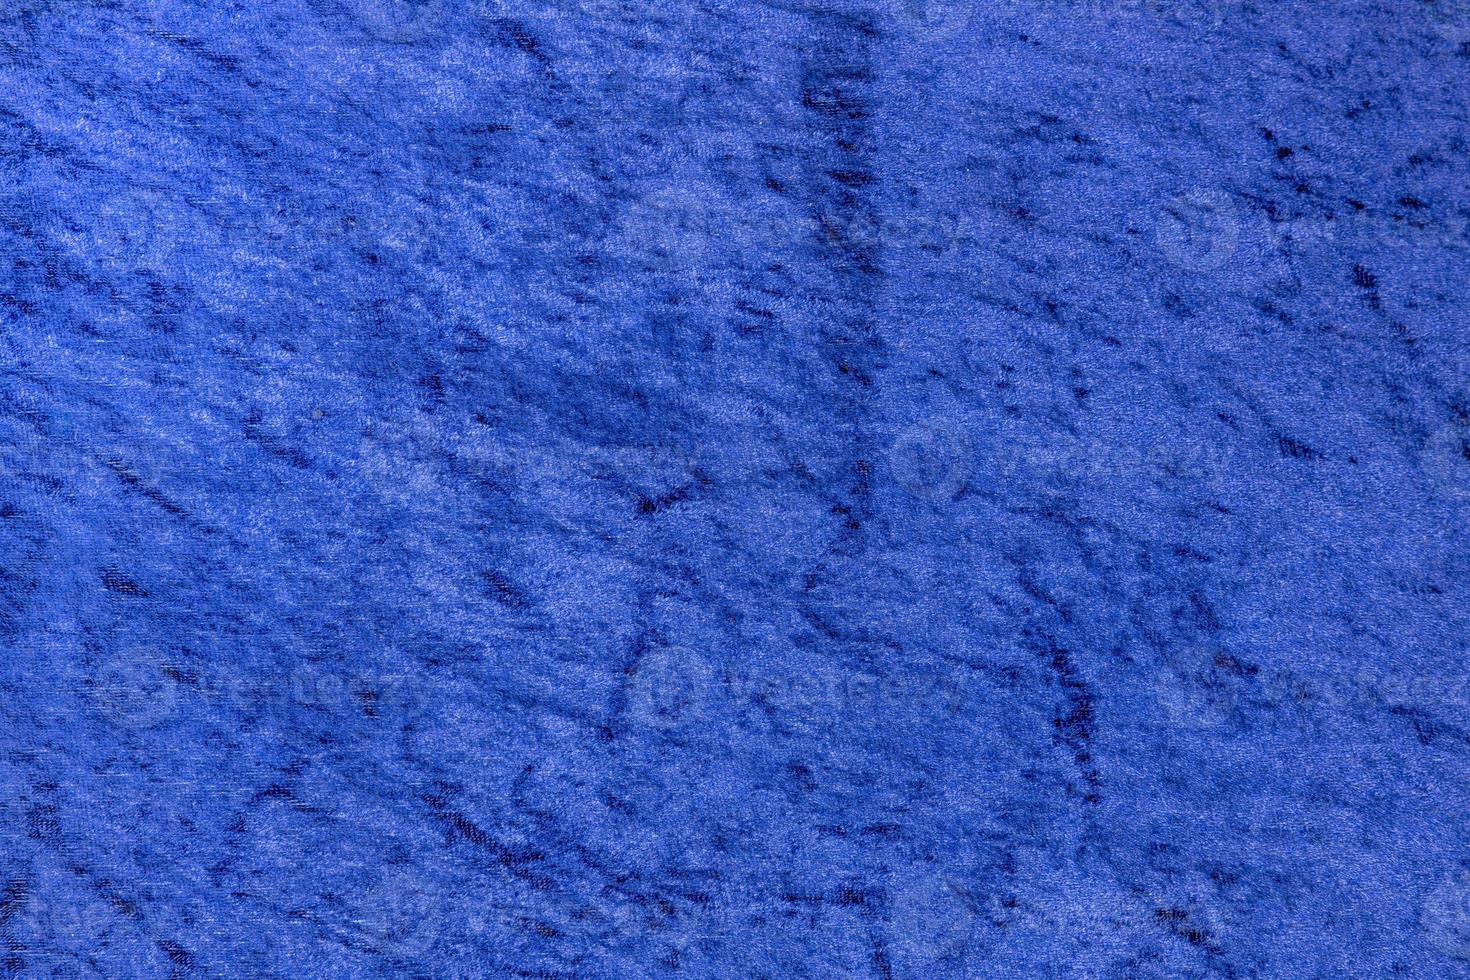 tecido de veludo azul claro brilhante uniforme como fundo foto